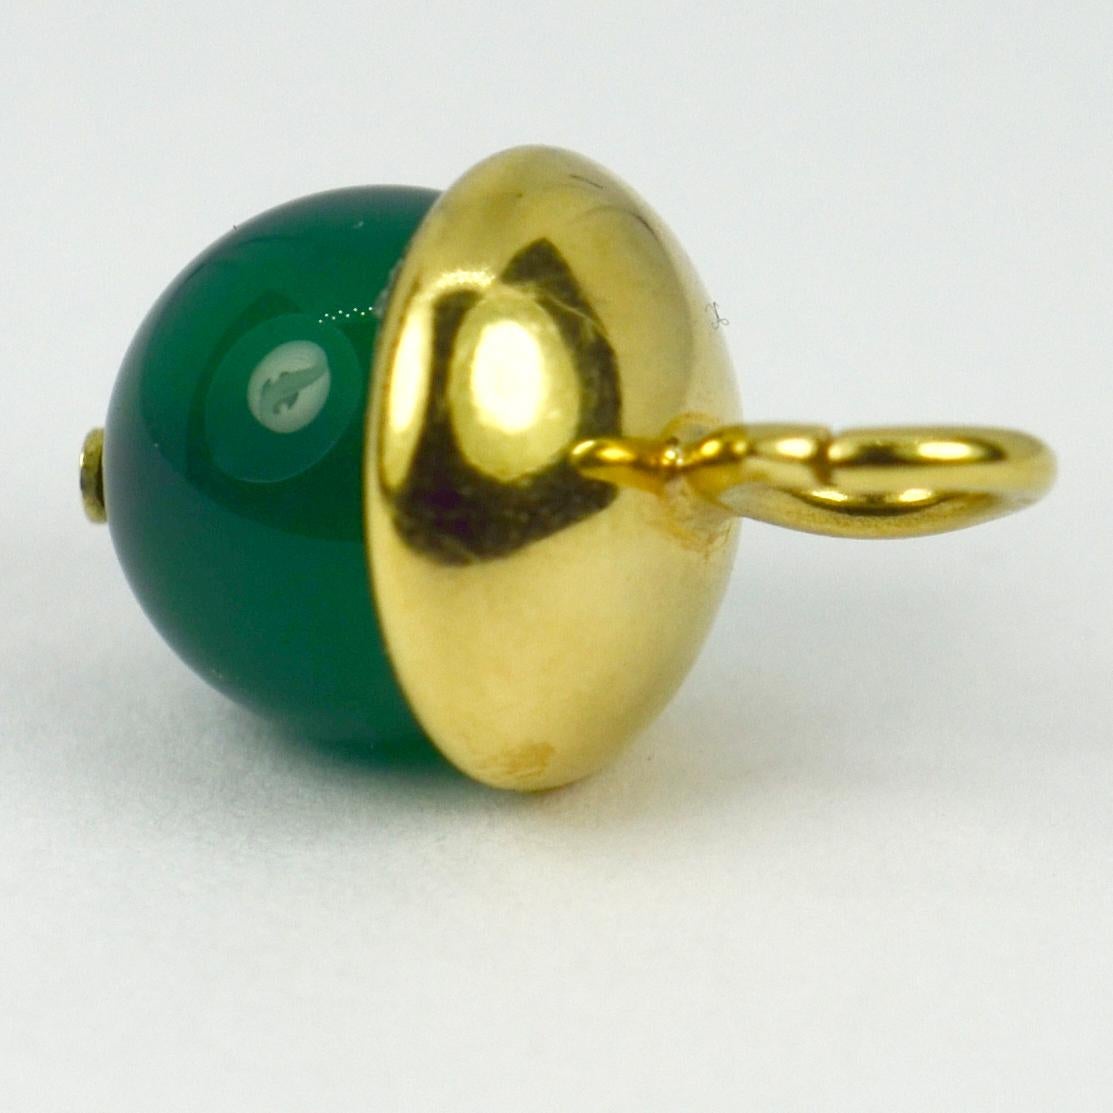 Un pendentif de charme en or jaune 18 carats (18K) et agate verte teintée conçu comme une sphère avec un capuchon en or. Estampillé de la marque du poinçon de la chouette pour l'or 18 carats et l'importation française.

Dimensions : 2 x 1,2 x 1,2